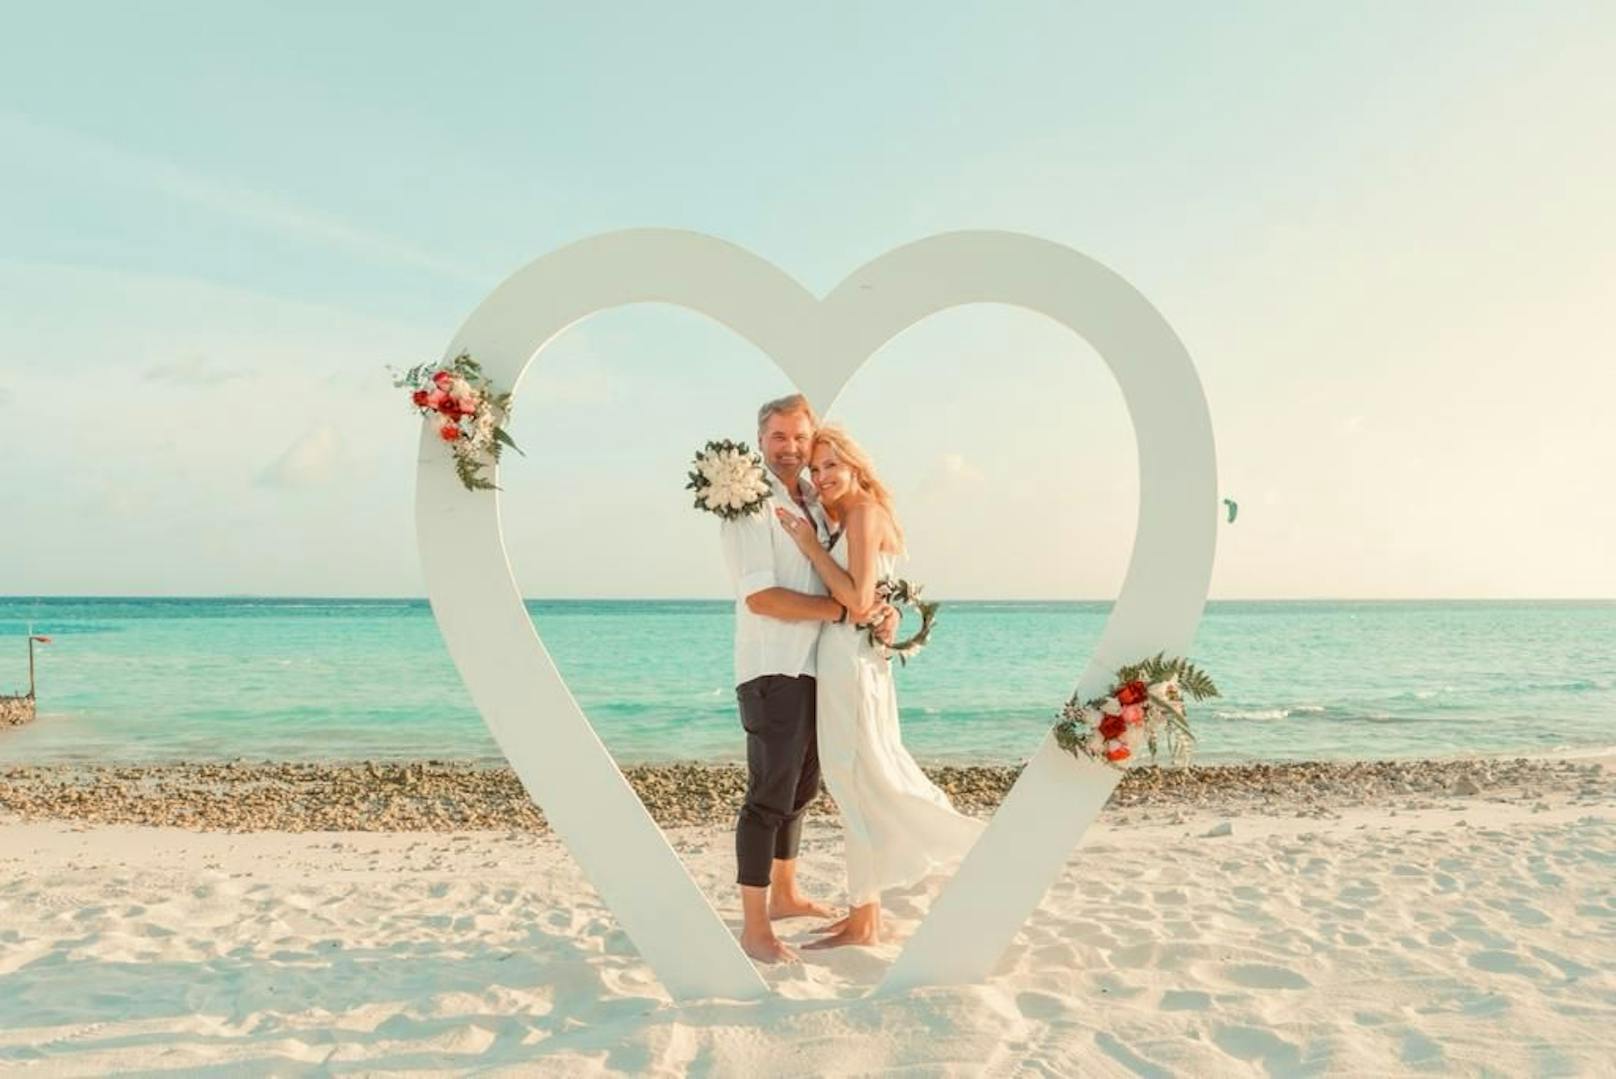 Nik P. hat heimlich geheiratet. Auf den Malediven gaben sich der Schlagersänger ("Ein Stern") und seine Karin das Ja-Wort, ganz privat.